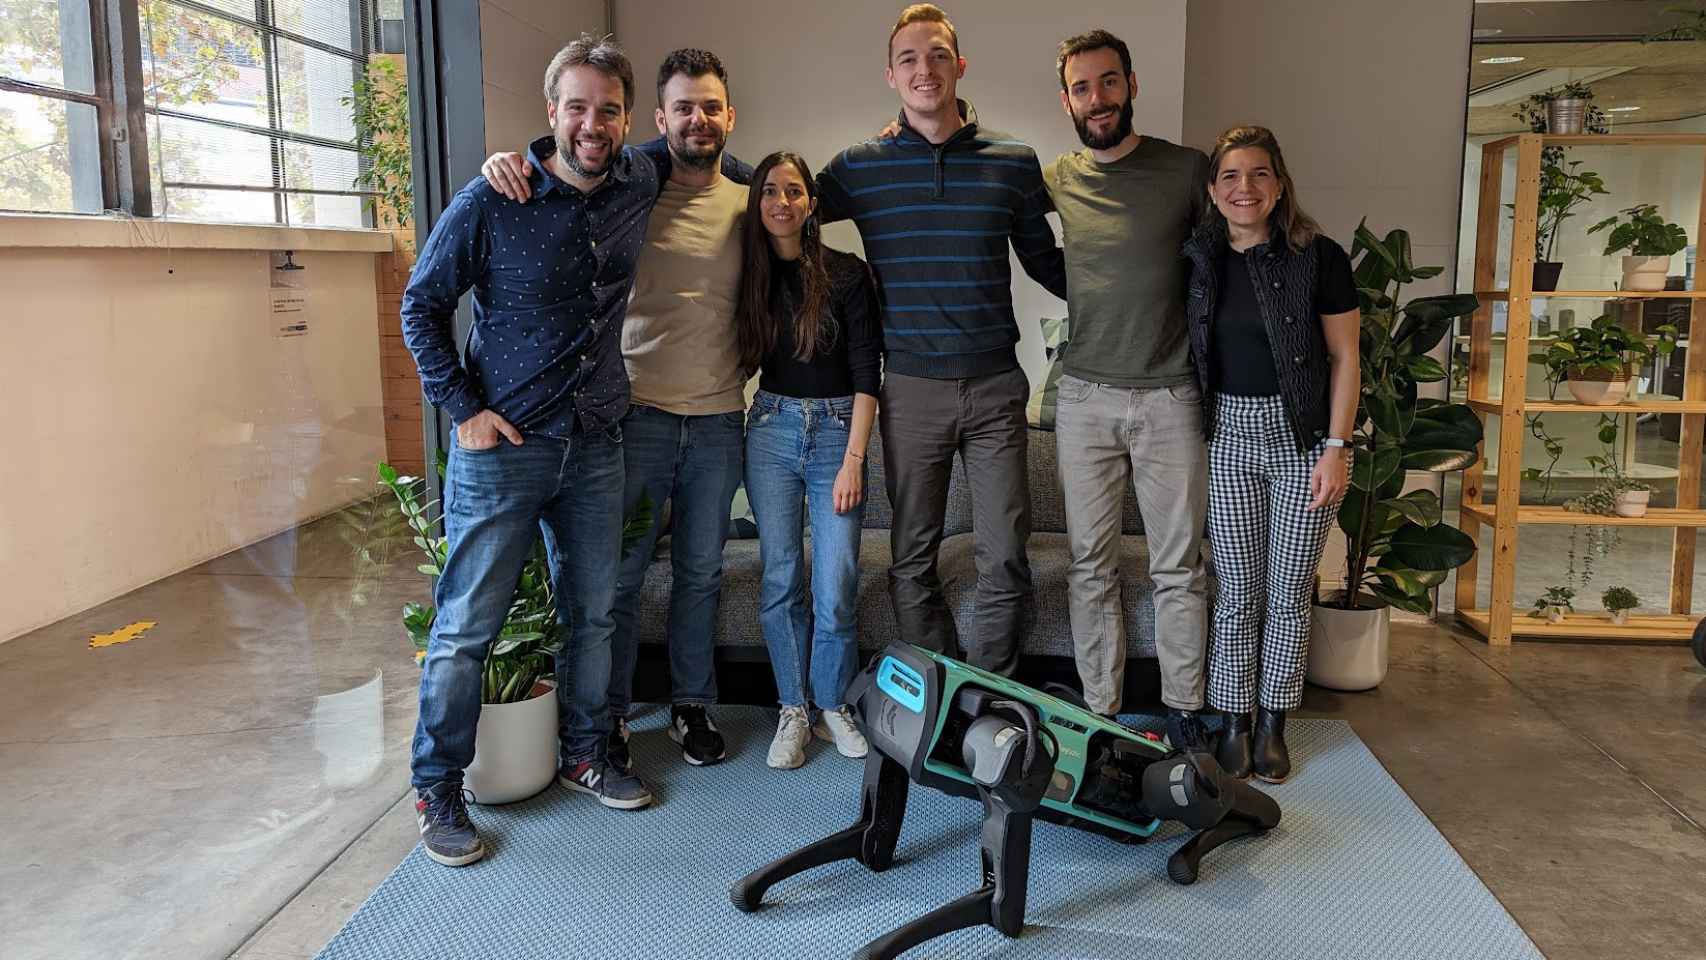 Equipo humano que conforma la startup barcelonesa Keybotic posa junto a Keyper, su perro-robot autónomo.